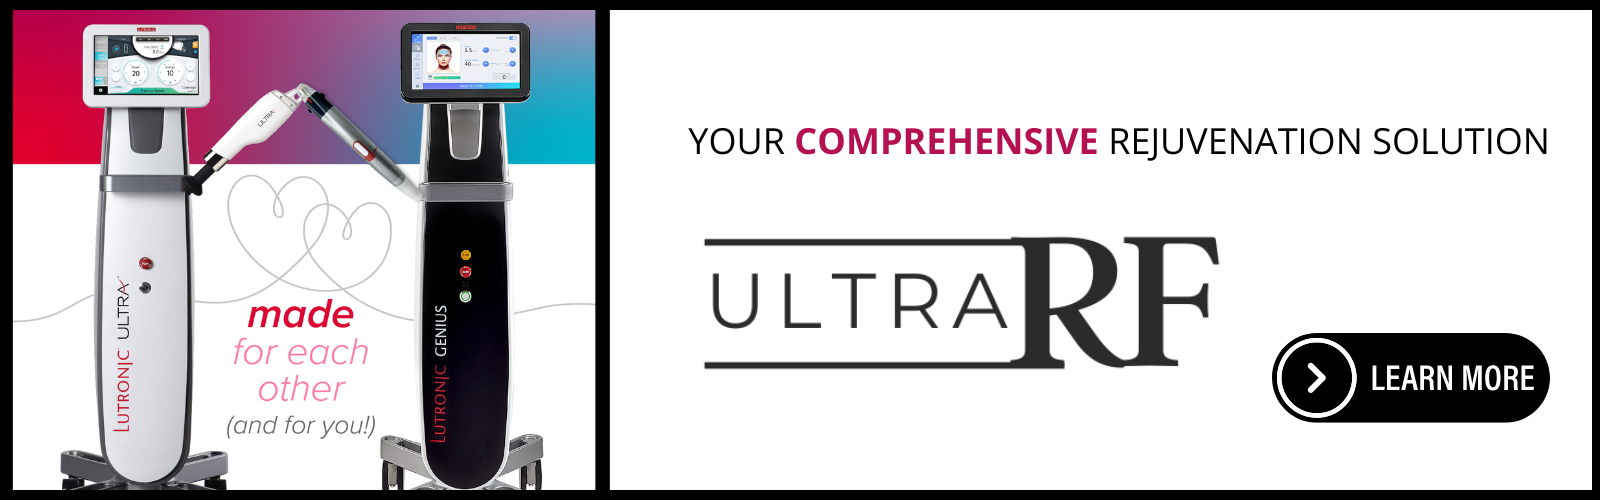 Ultra RF the comprehensive rejuvenation solution